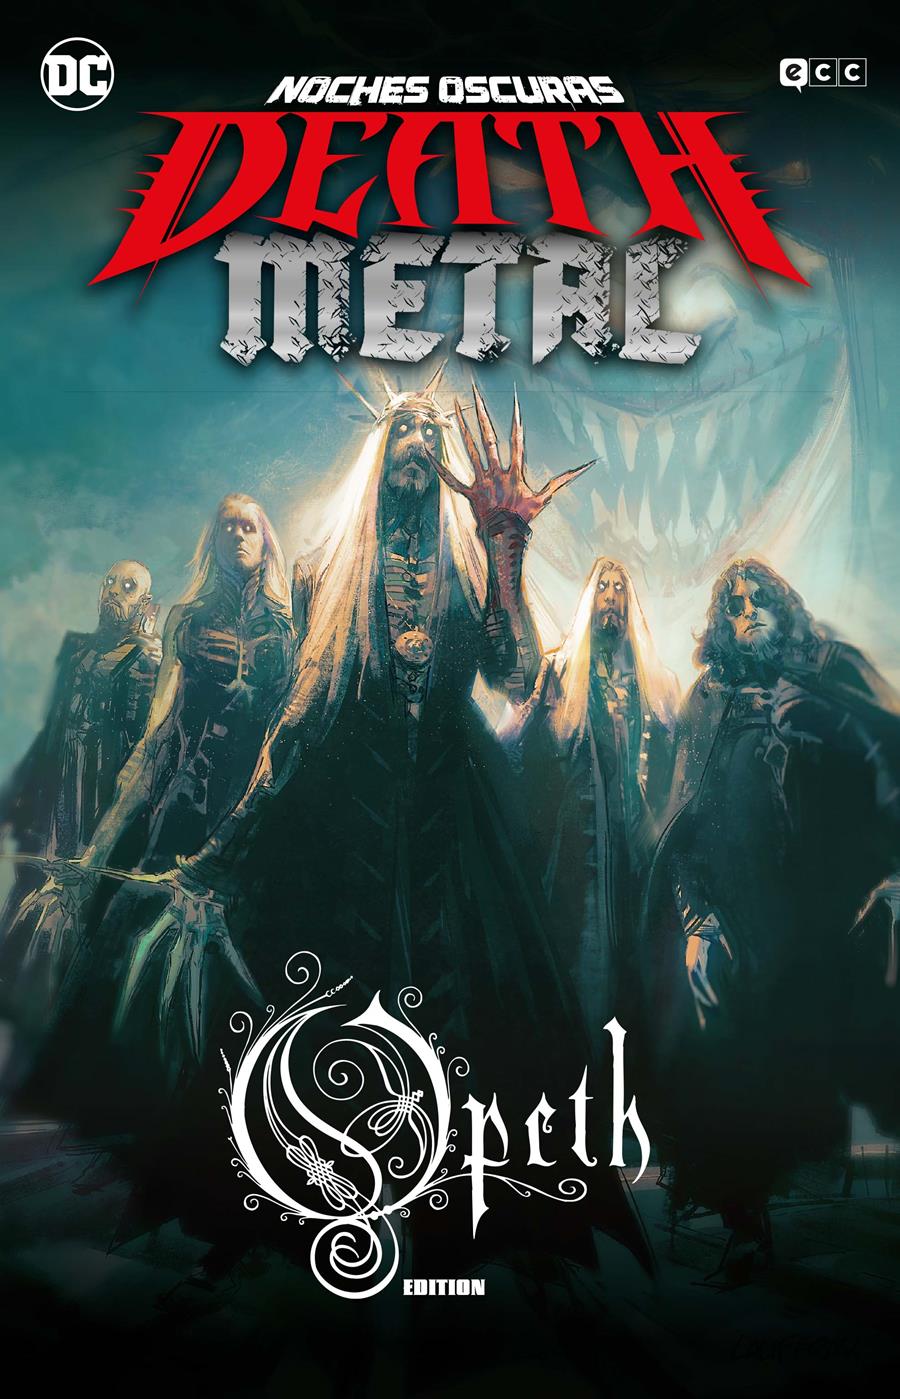 Noches oscuras: Death Metal núm. 4 (Opeth Band Edition) (Cartoné) | N0621-ECC28 | Greg Capullo / Scott Snyder | Terra de Còmic - Tu tienda de cómics online especializada en cómics, manga y merchandising